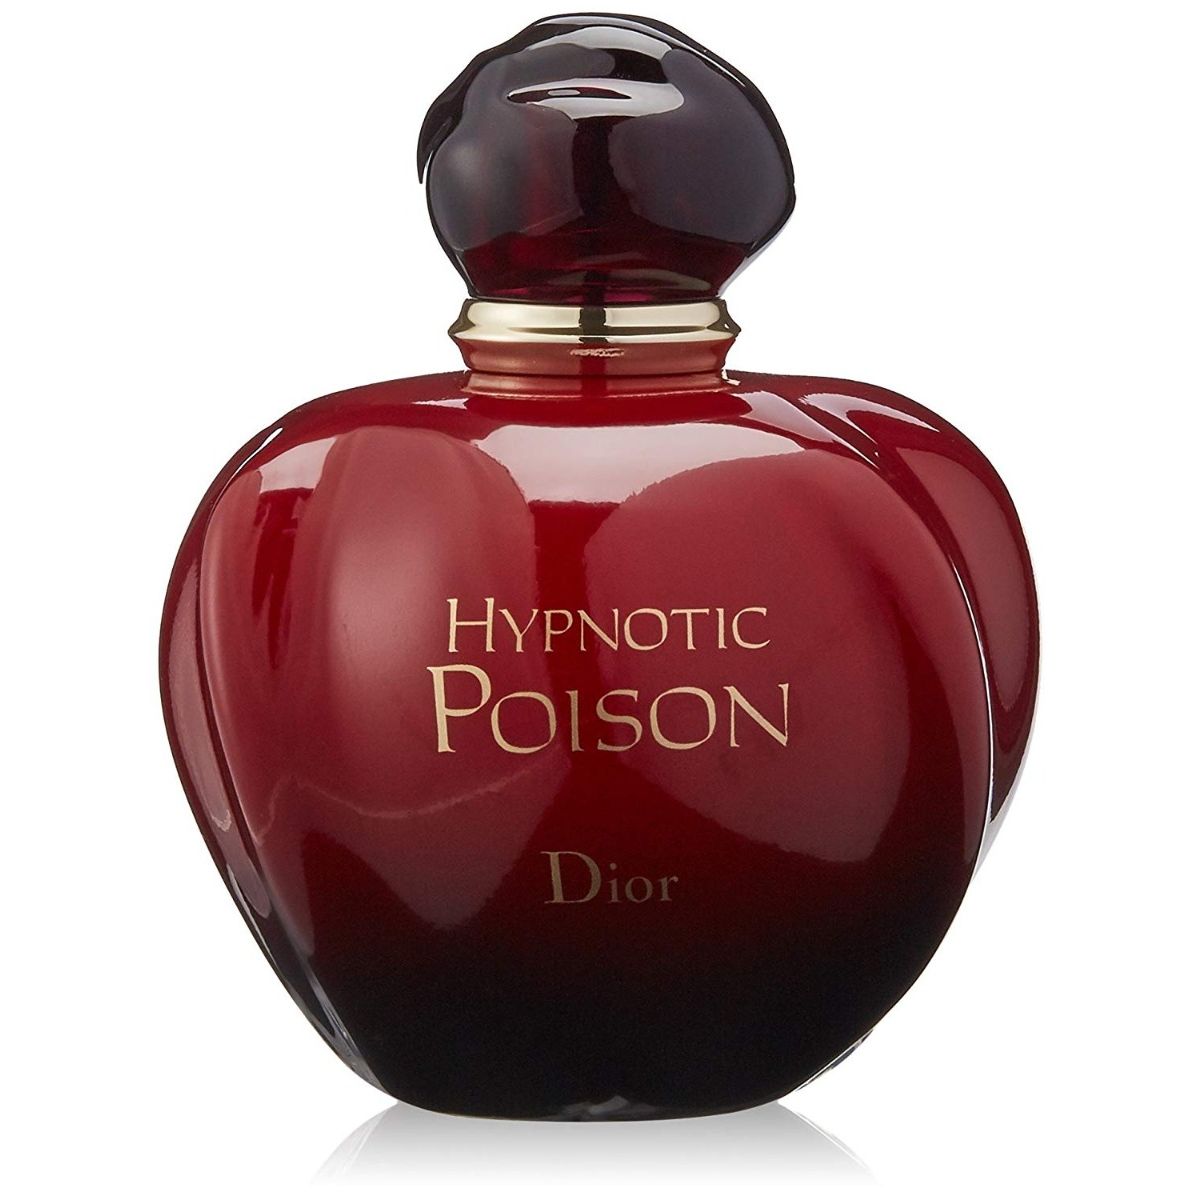 hypnotic poison dior price